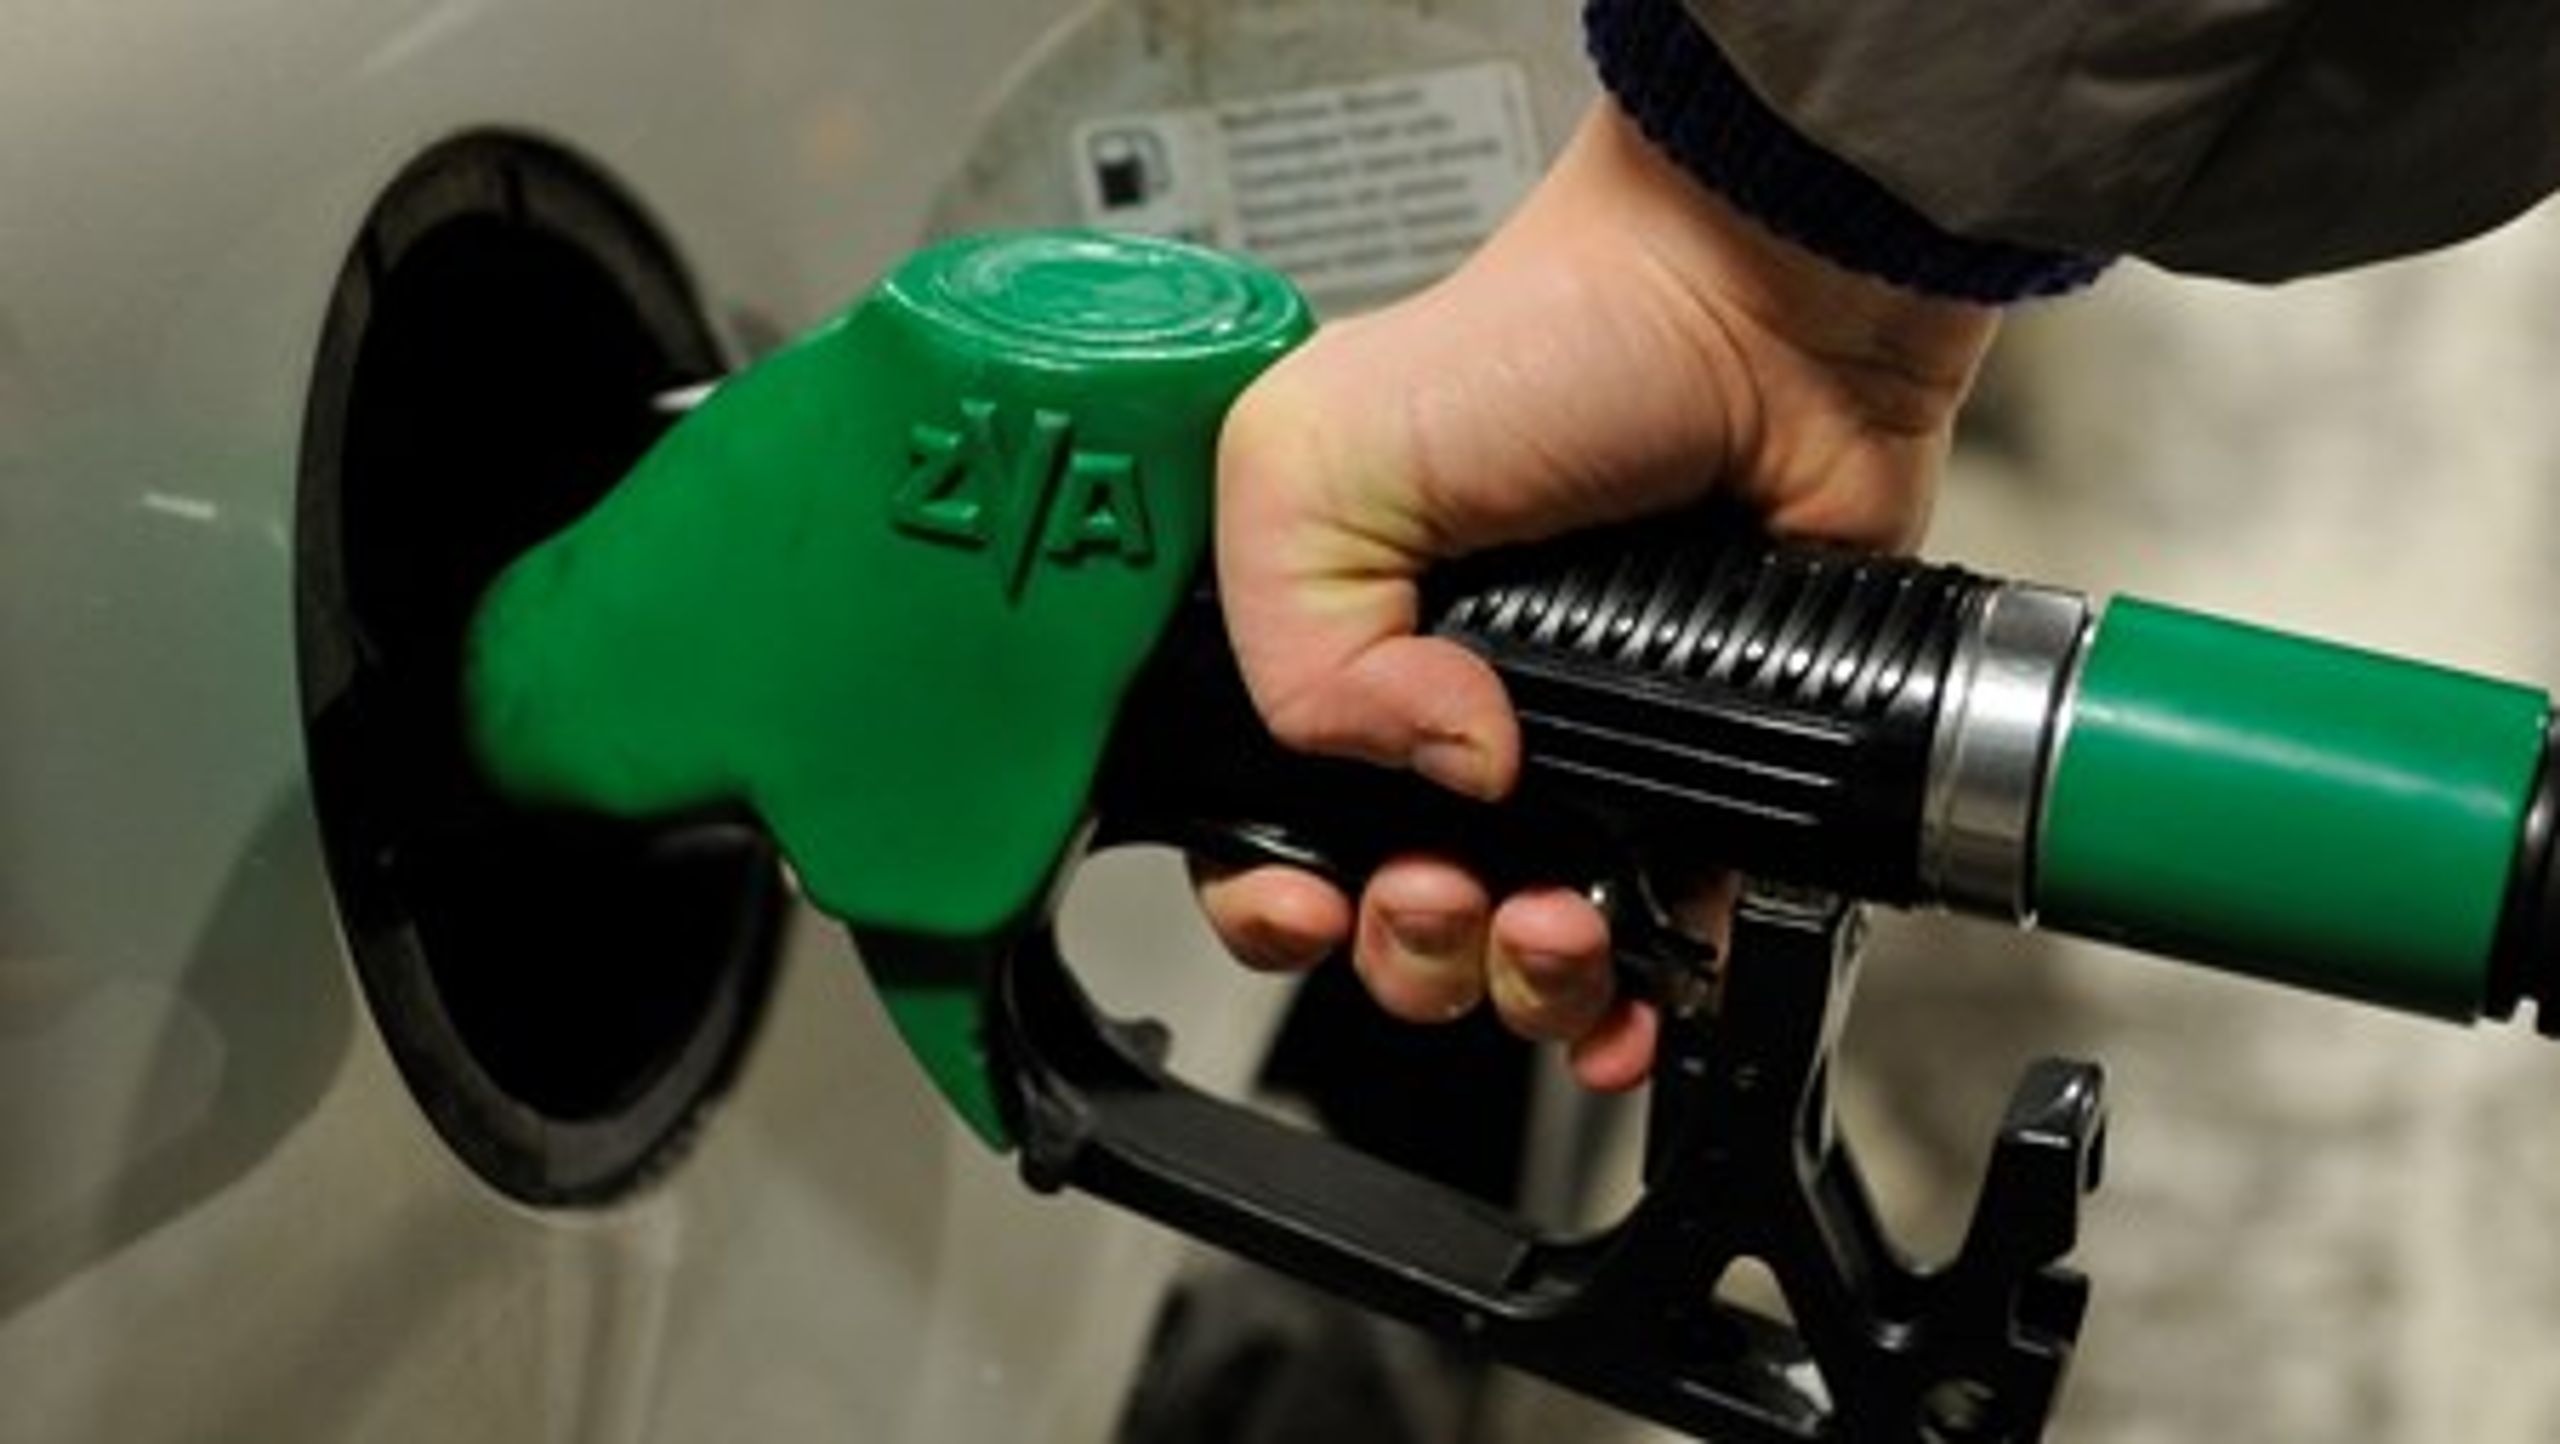 Regeringen anbefales blandt andet at implementere nye EU-regler om iblanding af&nbsp;2. generations bioethanol i benzin i en fart. Det vil sætte&nbsp;skub i efterspørgslen, vurderer 3F's grønne tænketank.&nbsp;